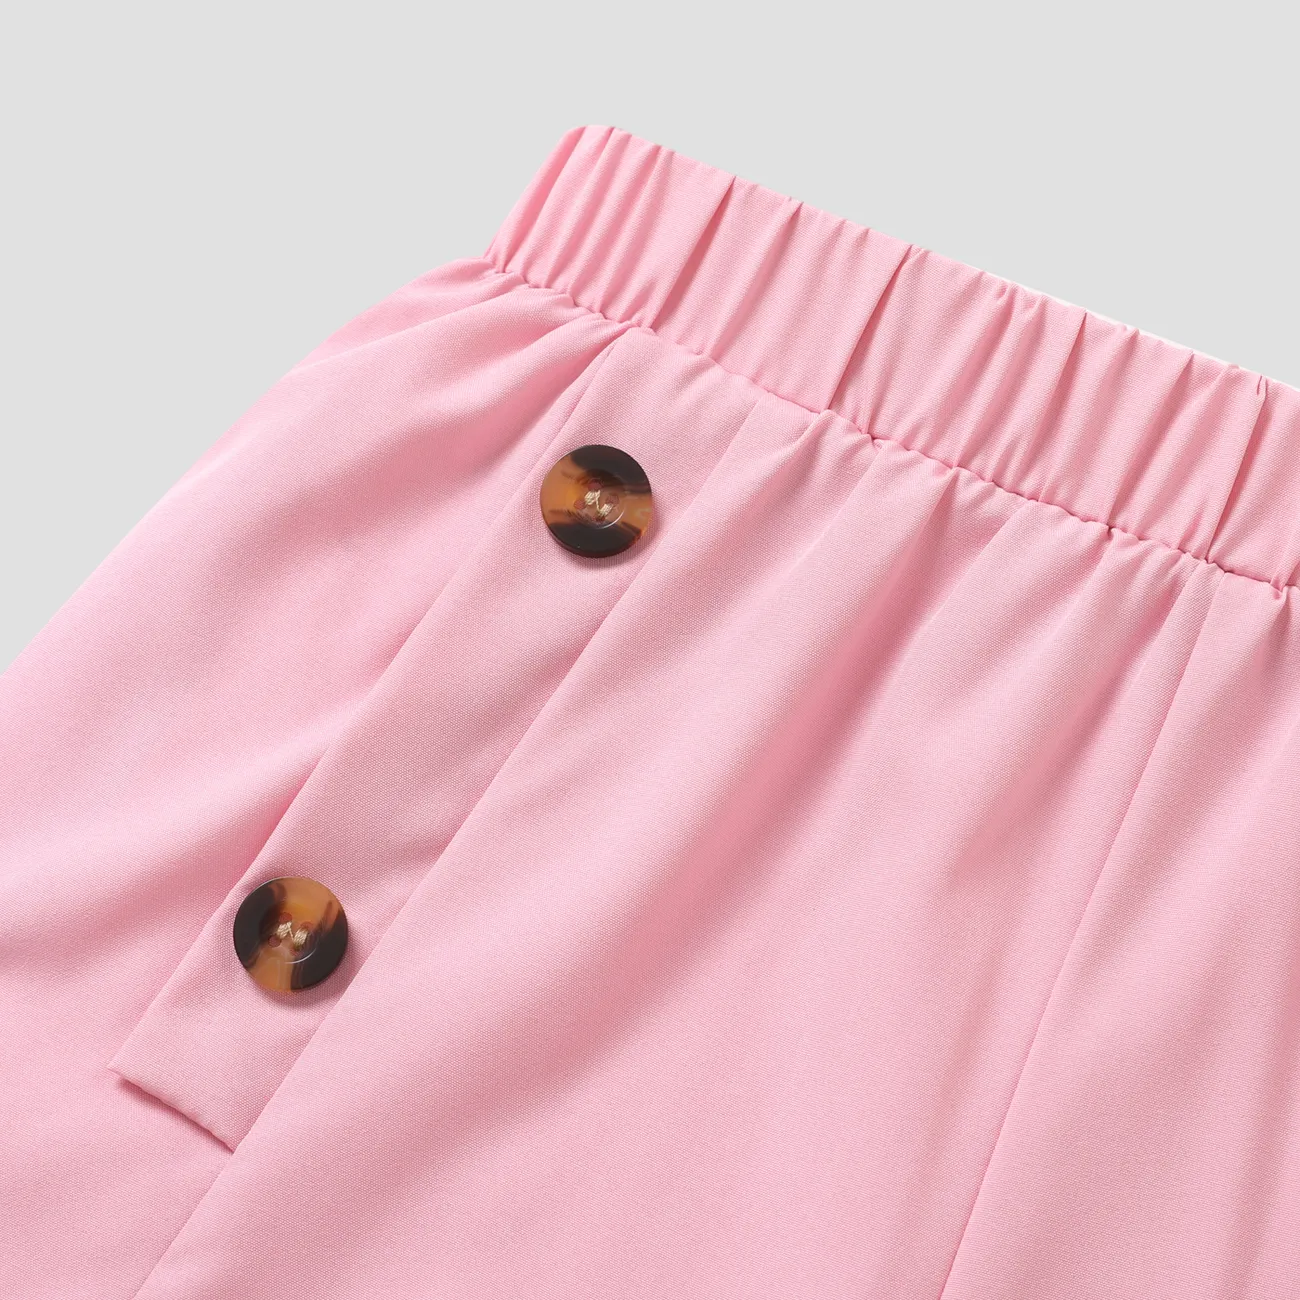 2 Stück Kinder Sets Mädchen Pflanzen und Blumen Neckholder Kurzärmeliger Shorts-Anzug rosa big image 1